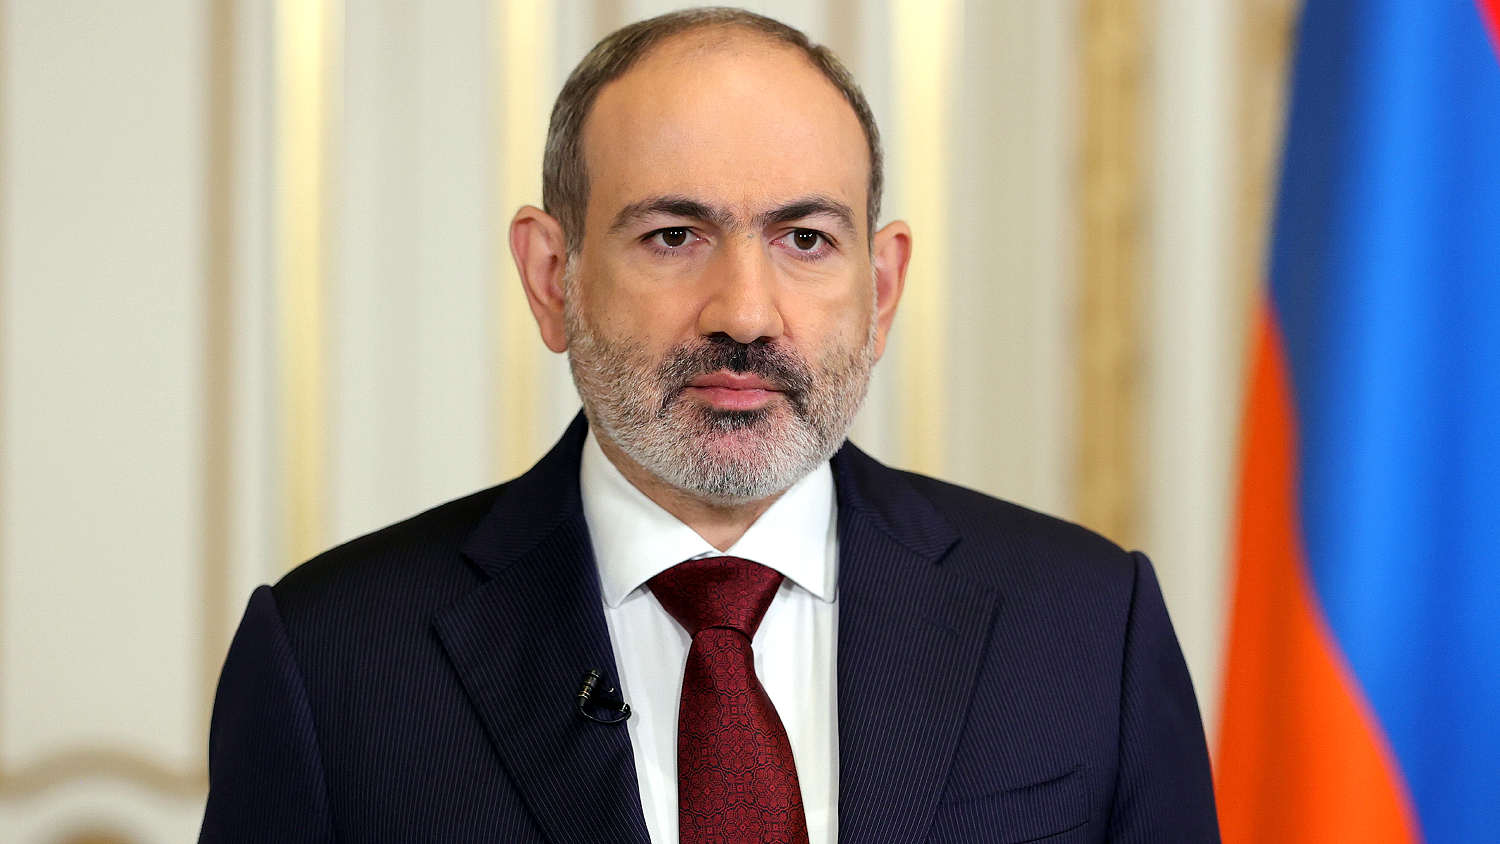 Пашинян. Бывший премьер министр армении